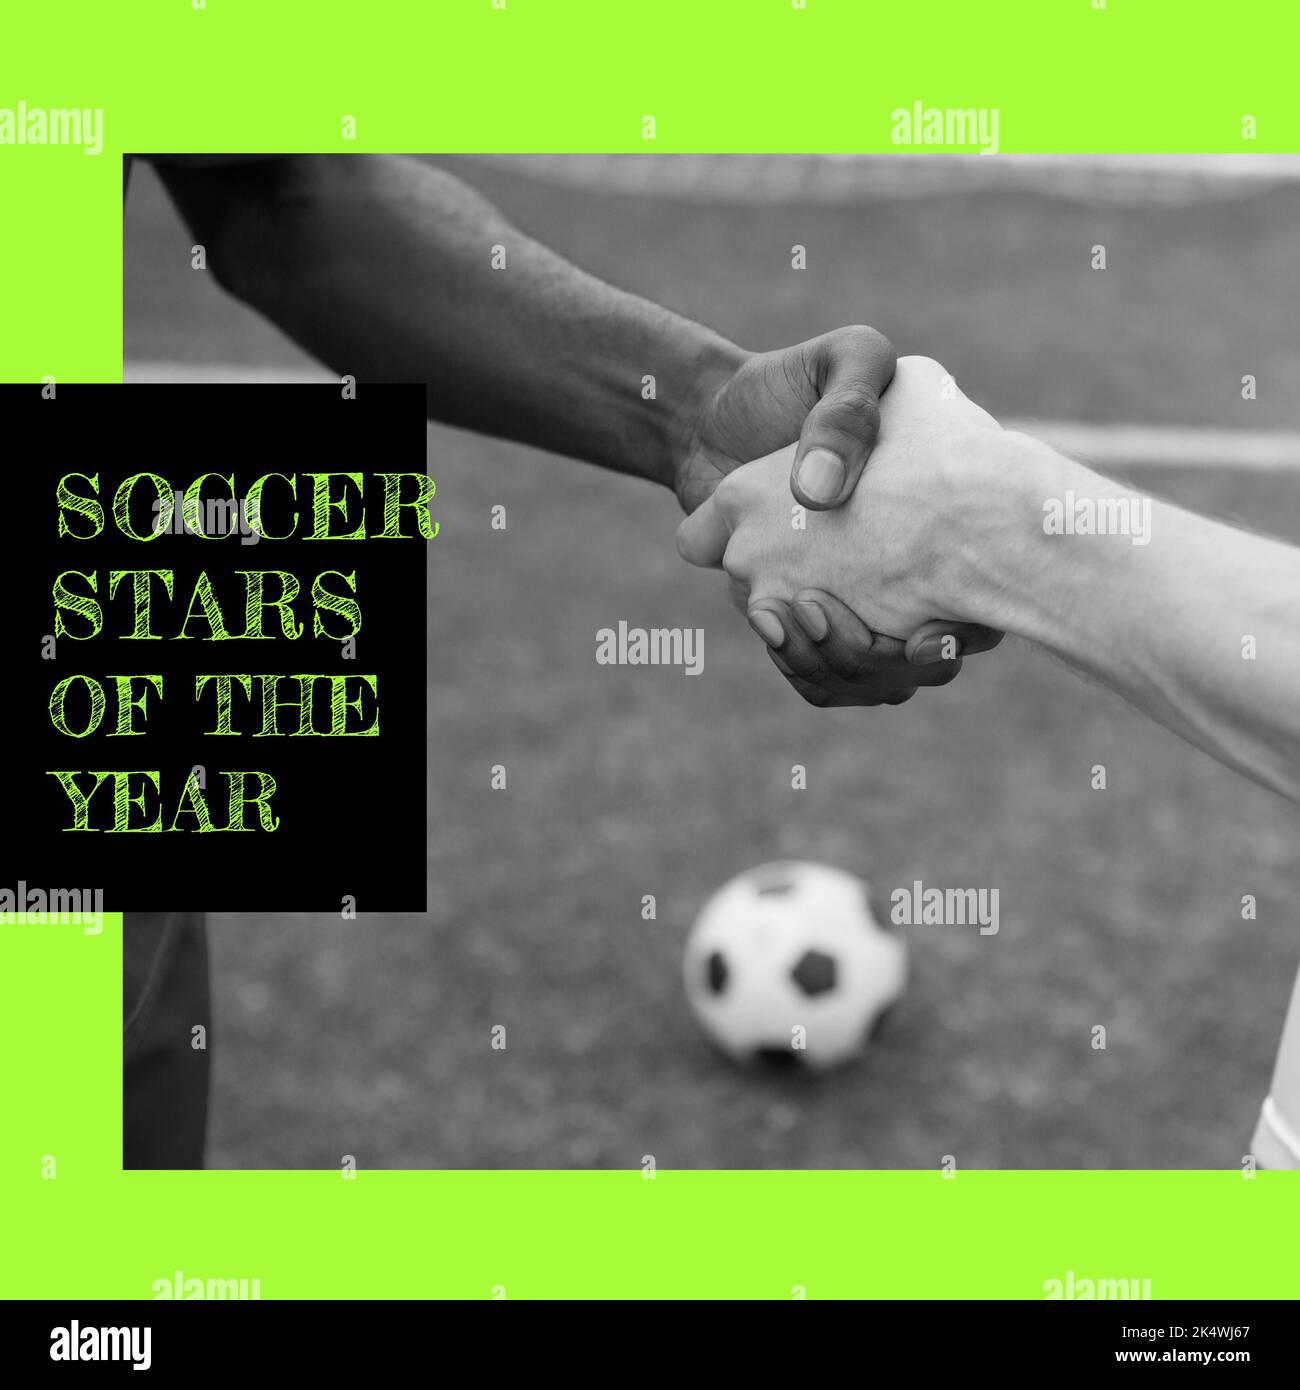 Zusammensetzung der Fußballstars des Jahres Text über schwarz-weiß Foto von Fußballer Handschlag Stockfoto